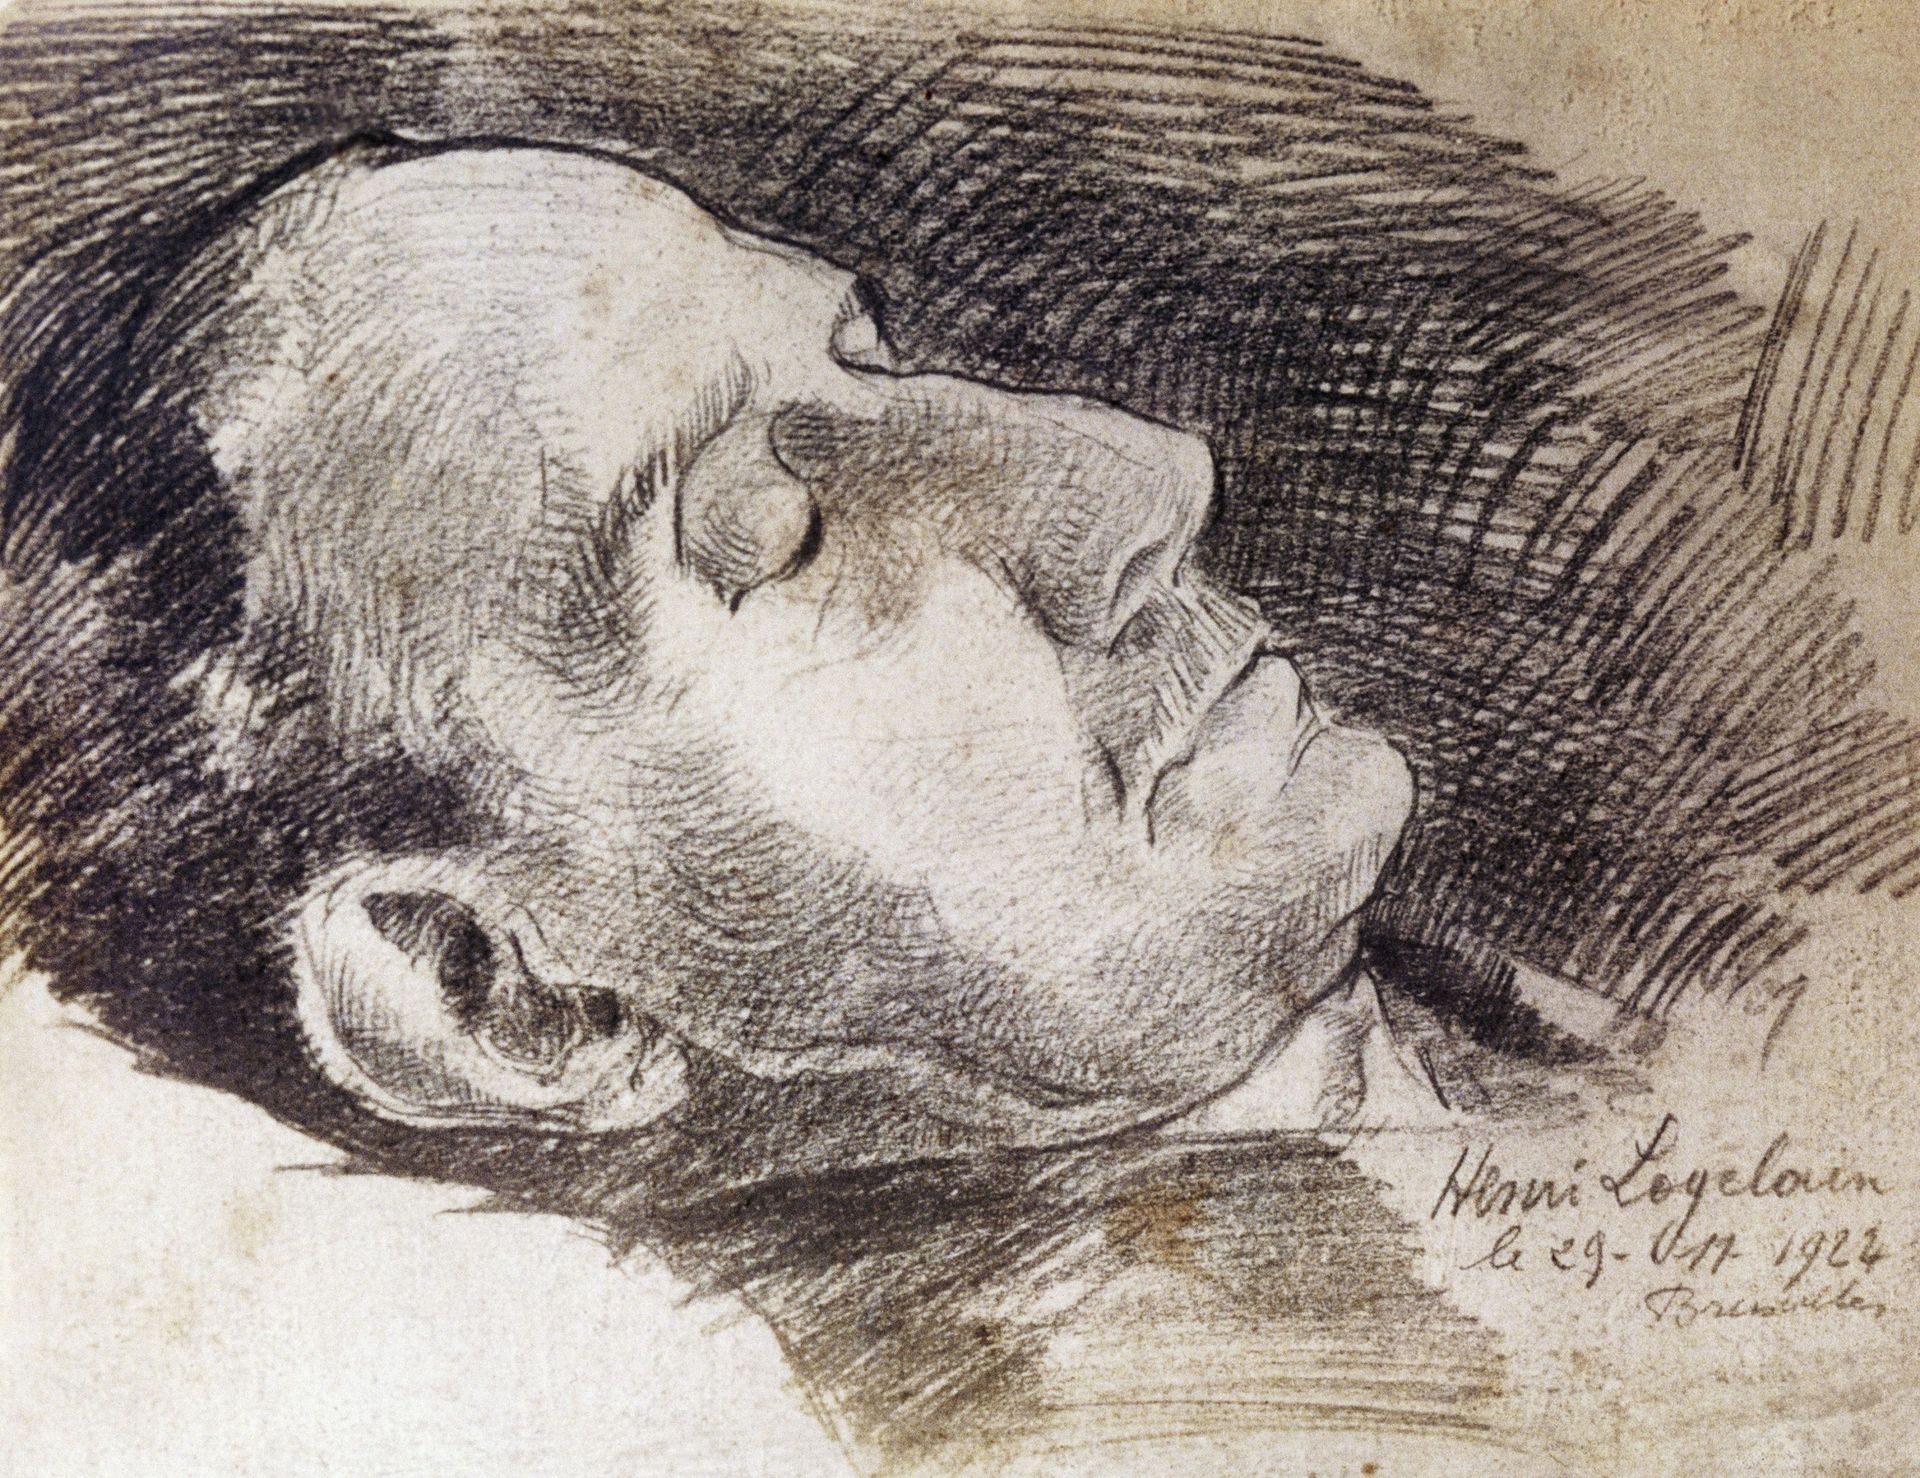 Portrait de Giacomo Puccini sur son lit de mort, réalisé le 29 novembre 1924 par Henri Loyelovin